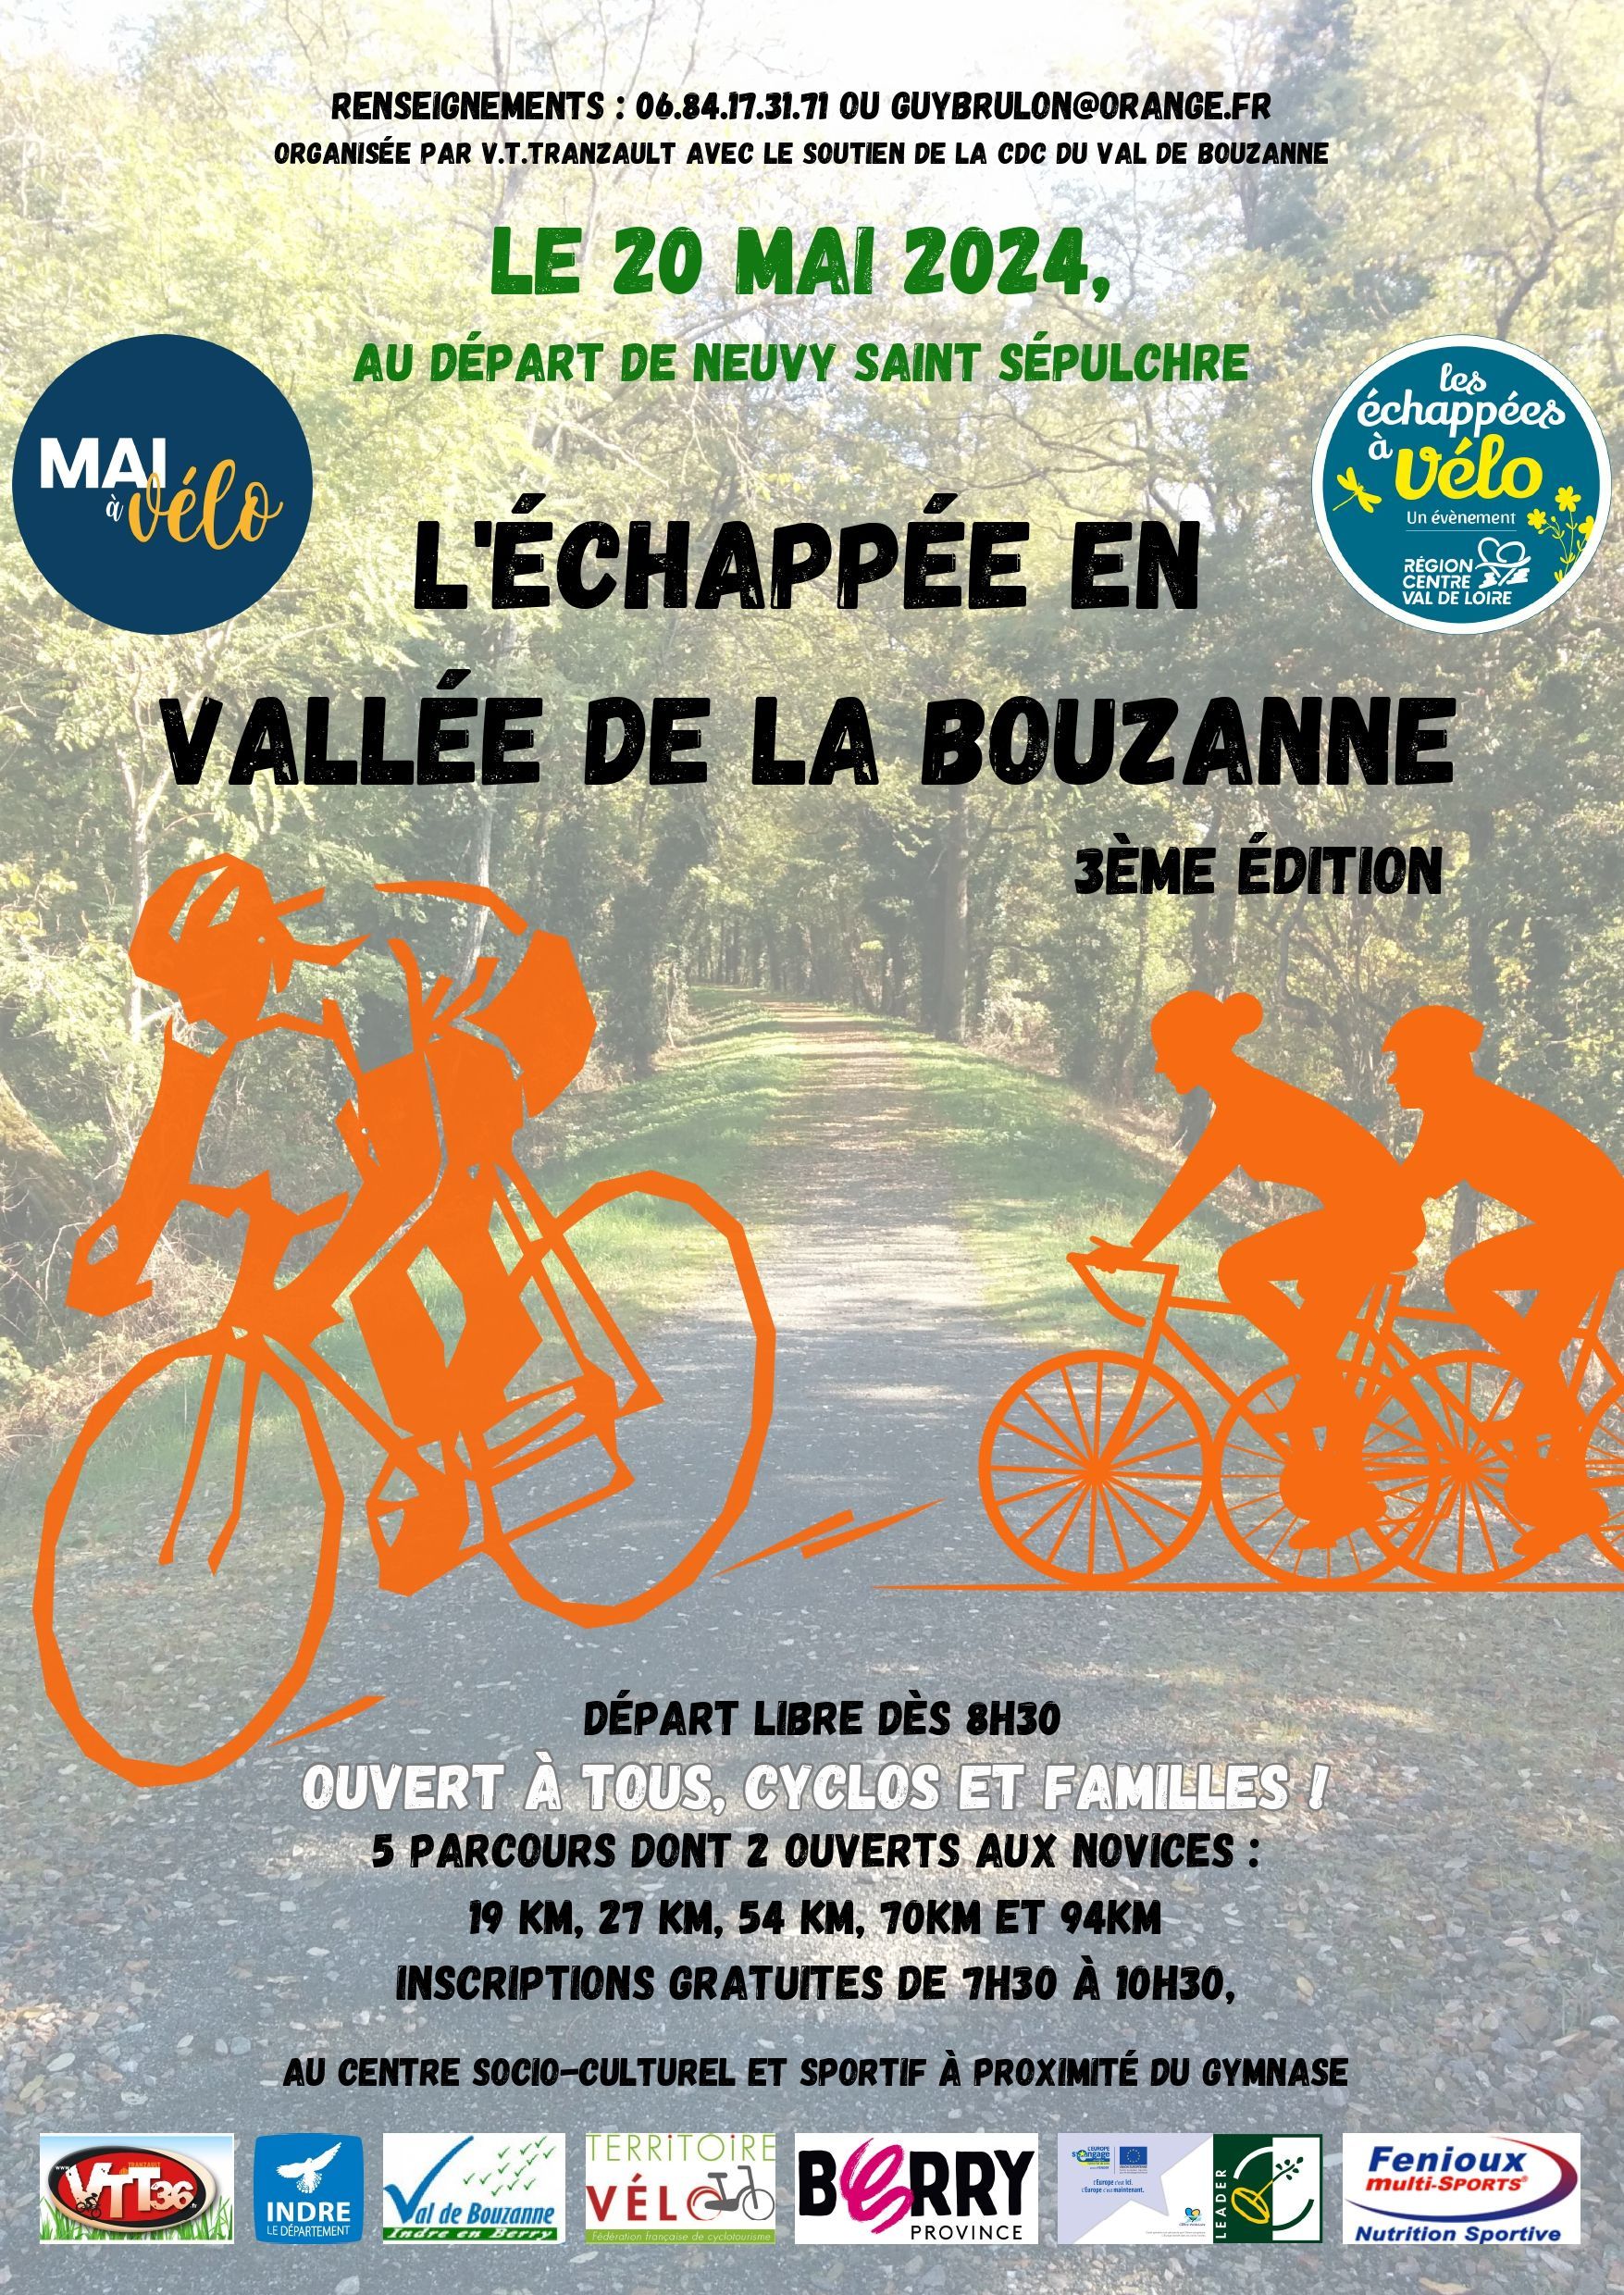 L'ECHAPPEE EN VALLEE DE LA BOUZANNE LUNDI 20 MAI 2024